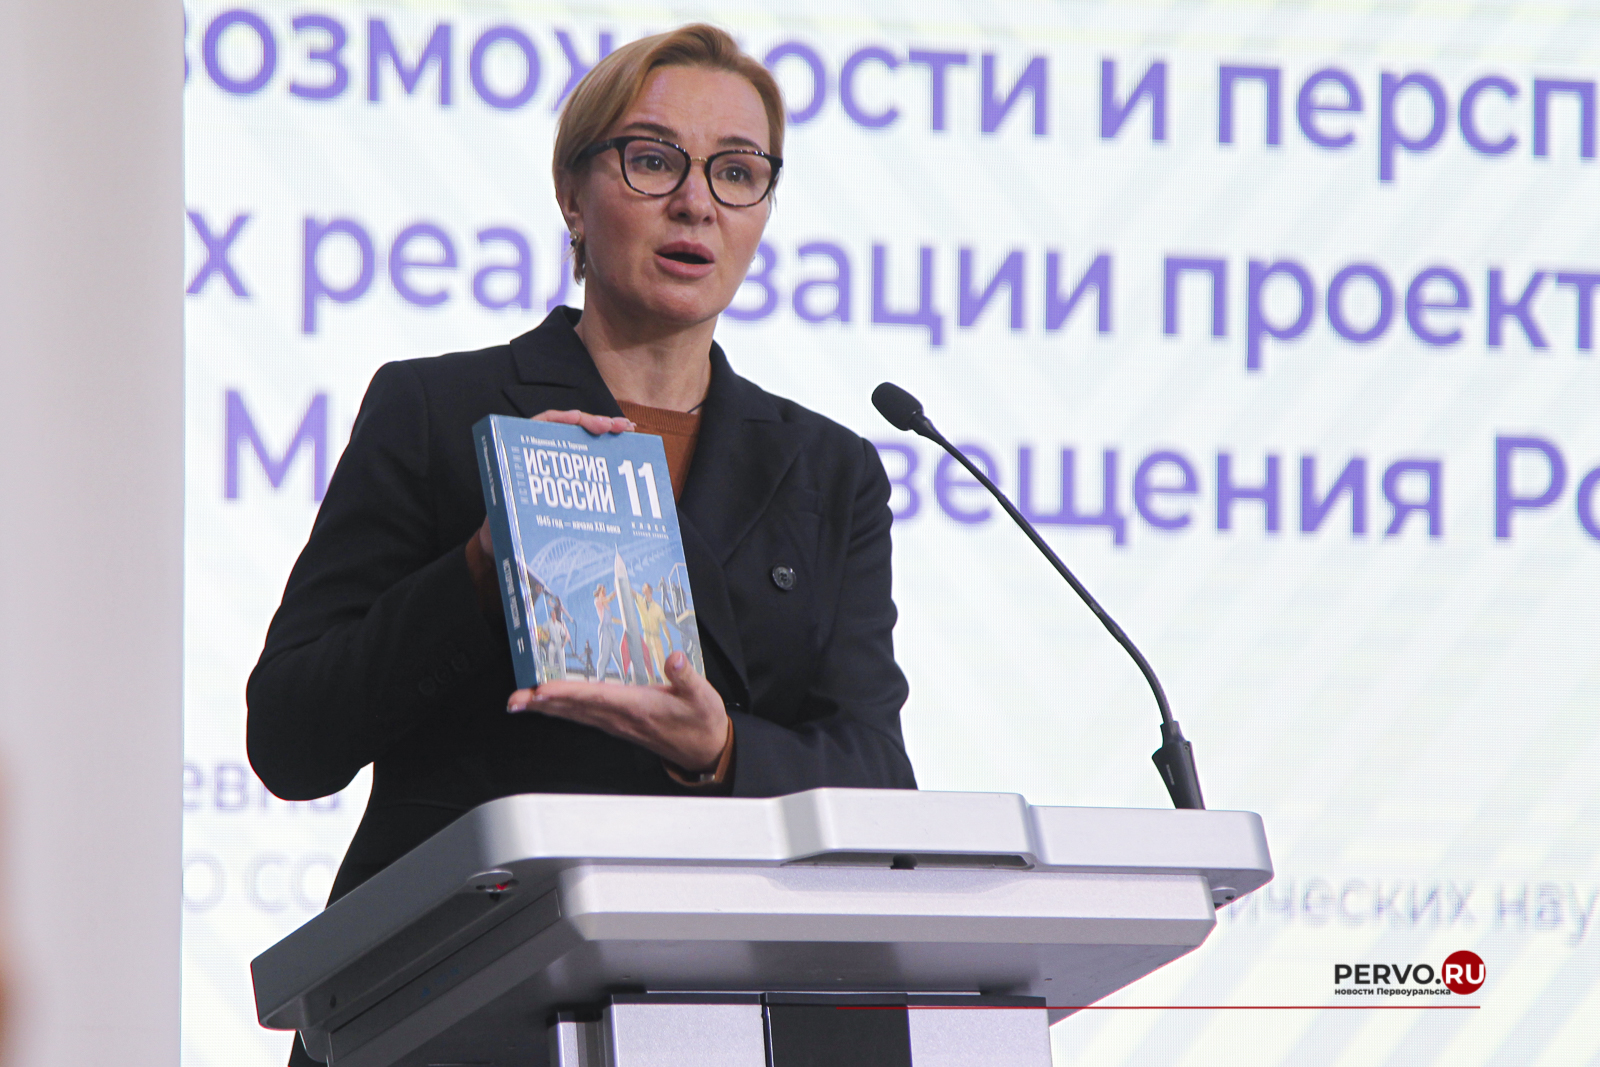 Крымский мост на обложке нового учебника истории появился по инициативе Путина